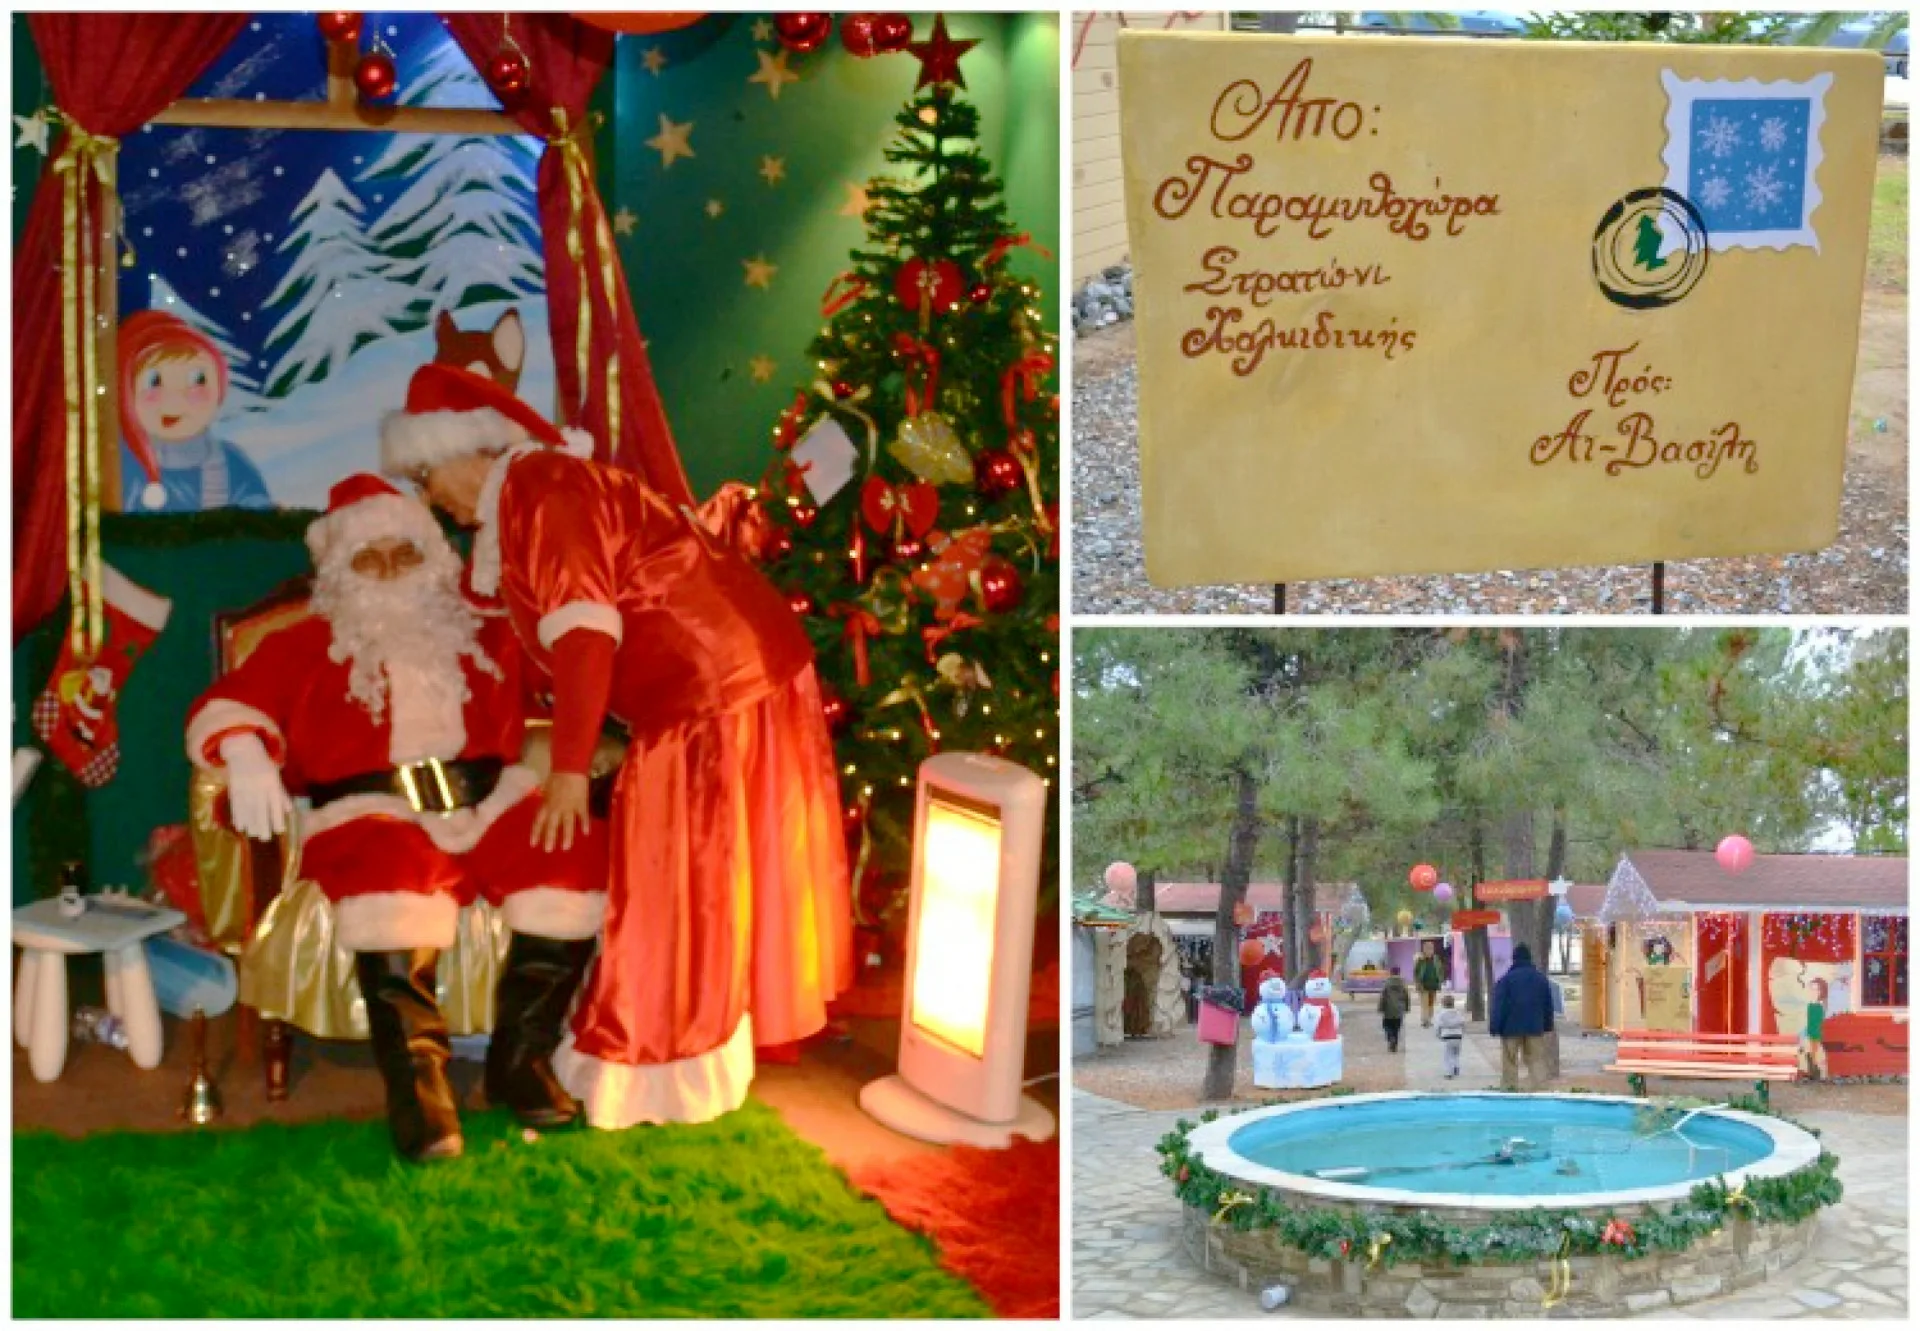 12 Χριστουγεννιάτικα θεματικά πάρκα στην Ελλάδα